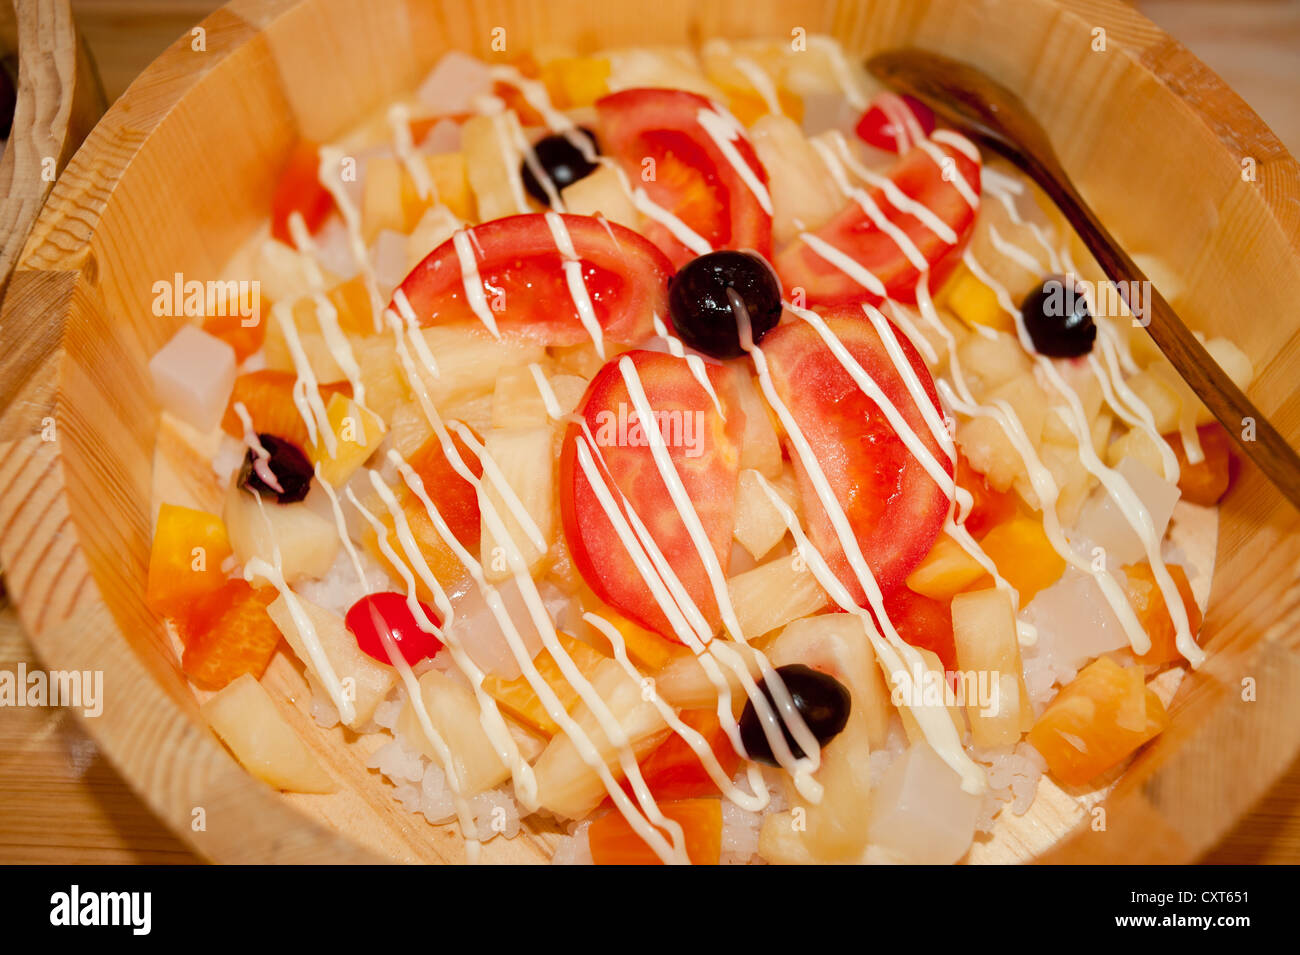 Salade de fruits, gourmet Banque D'Images